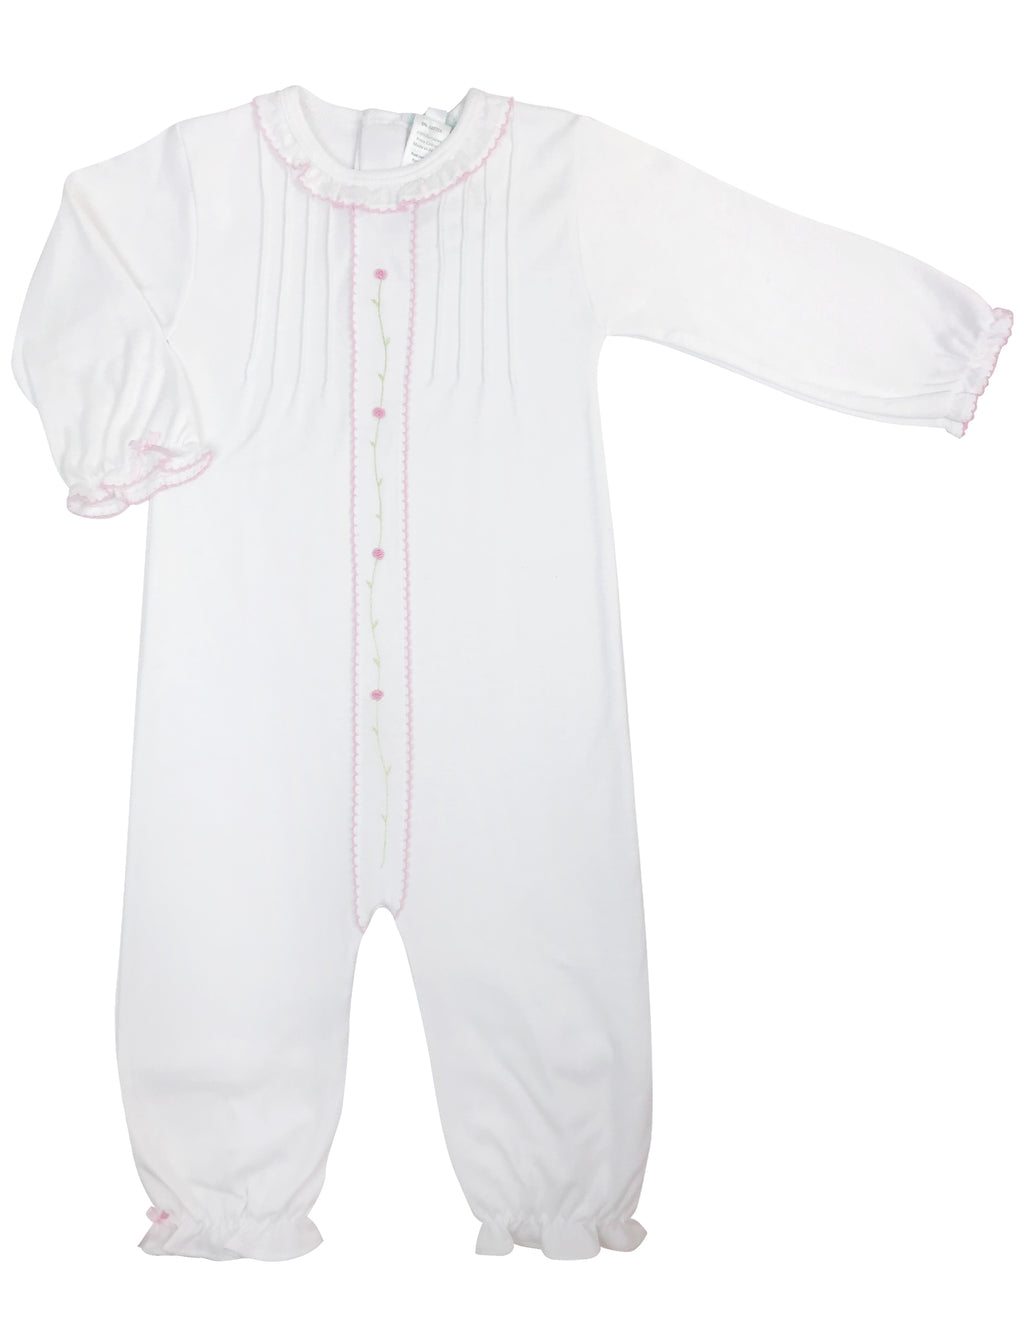 Baby Girl's White Rose Vine Converter - Little Threads Inc. Children's Clothing